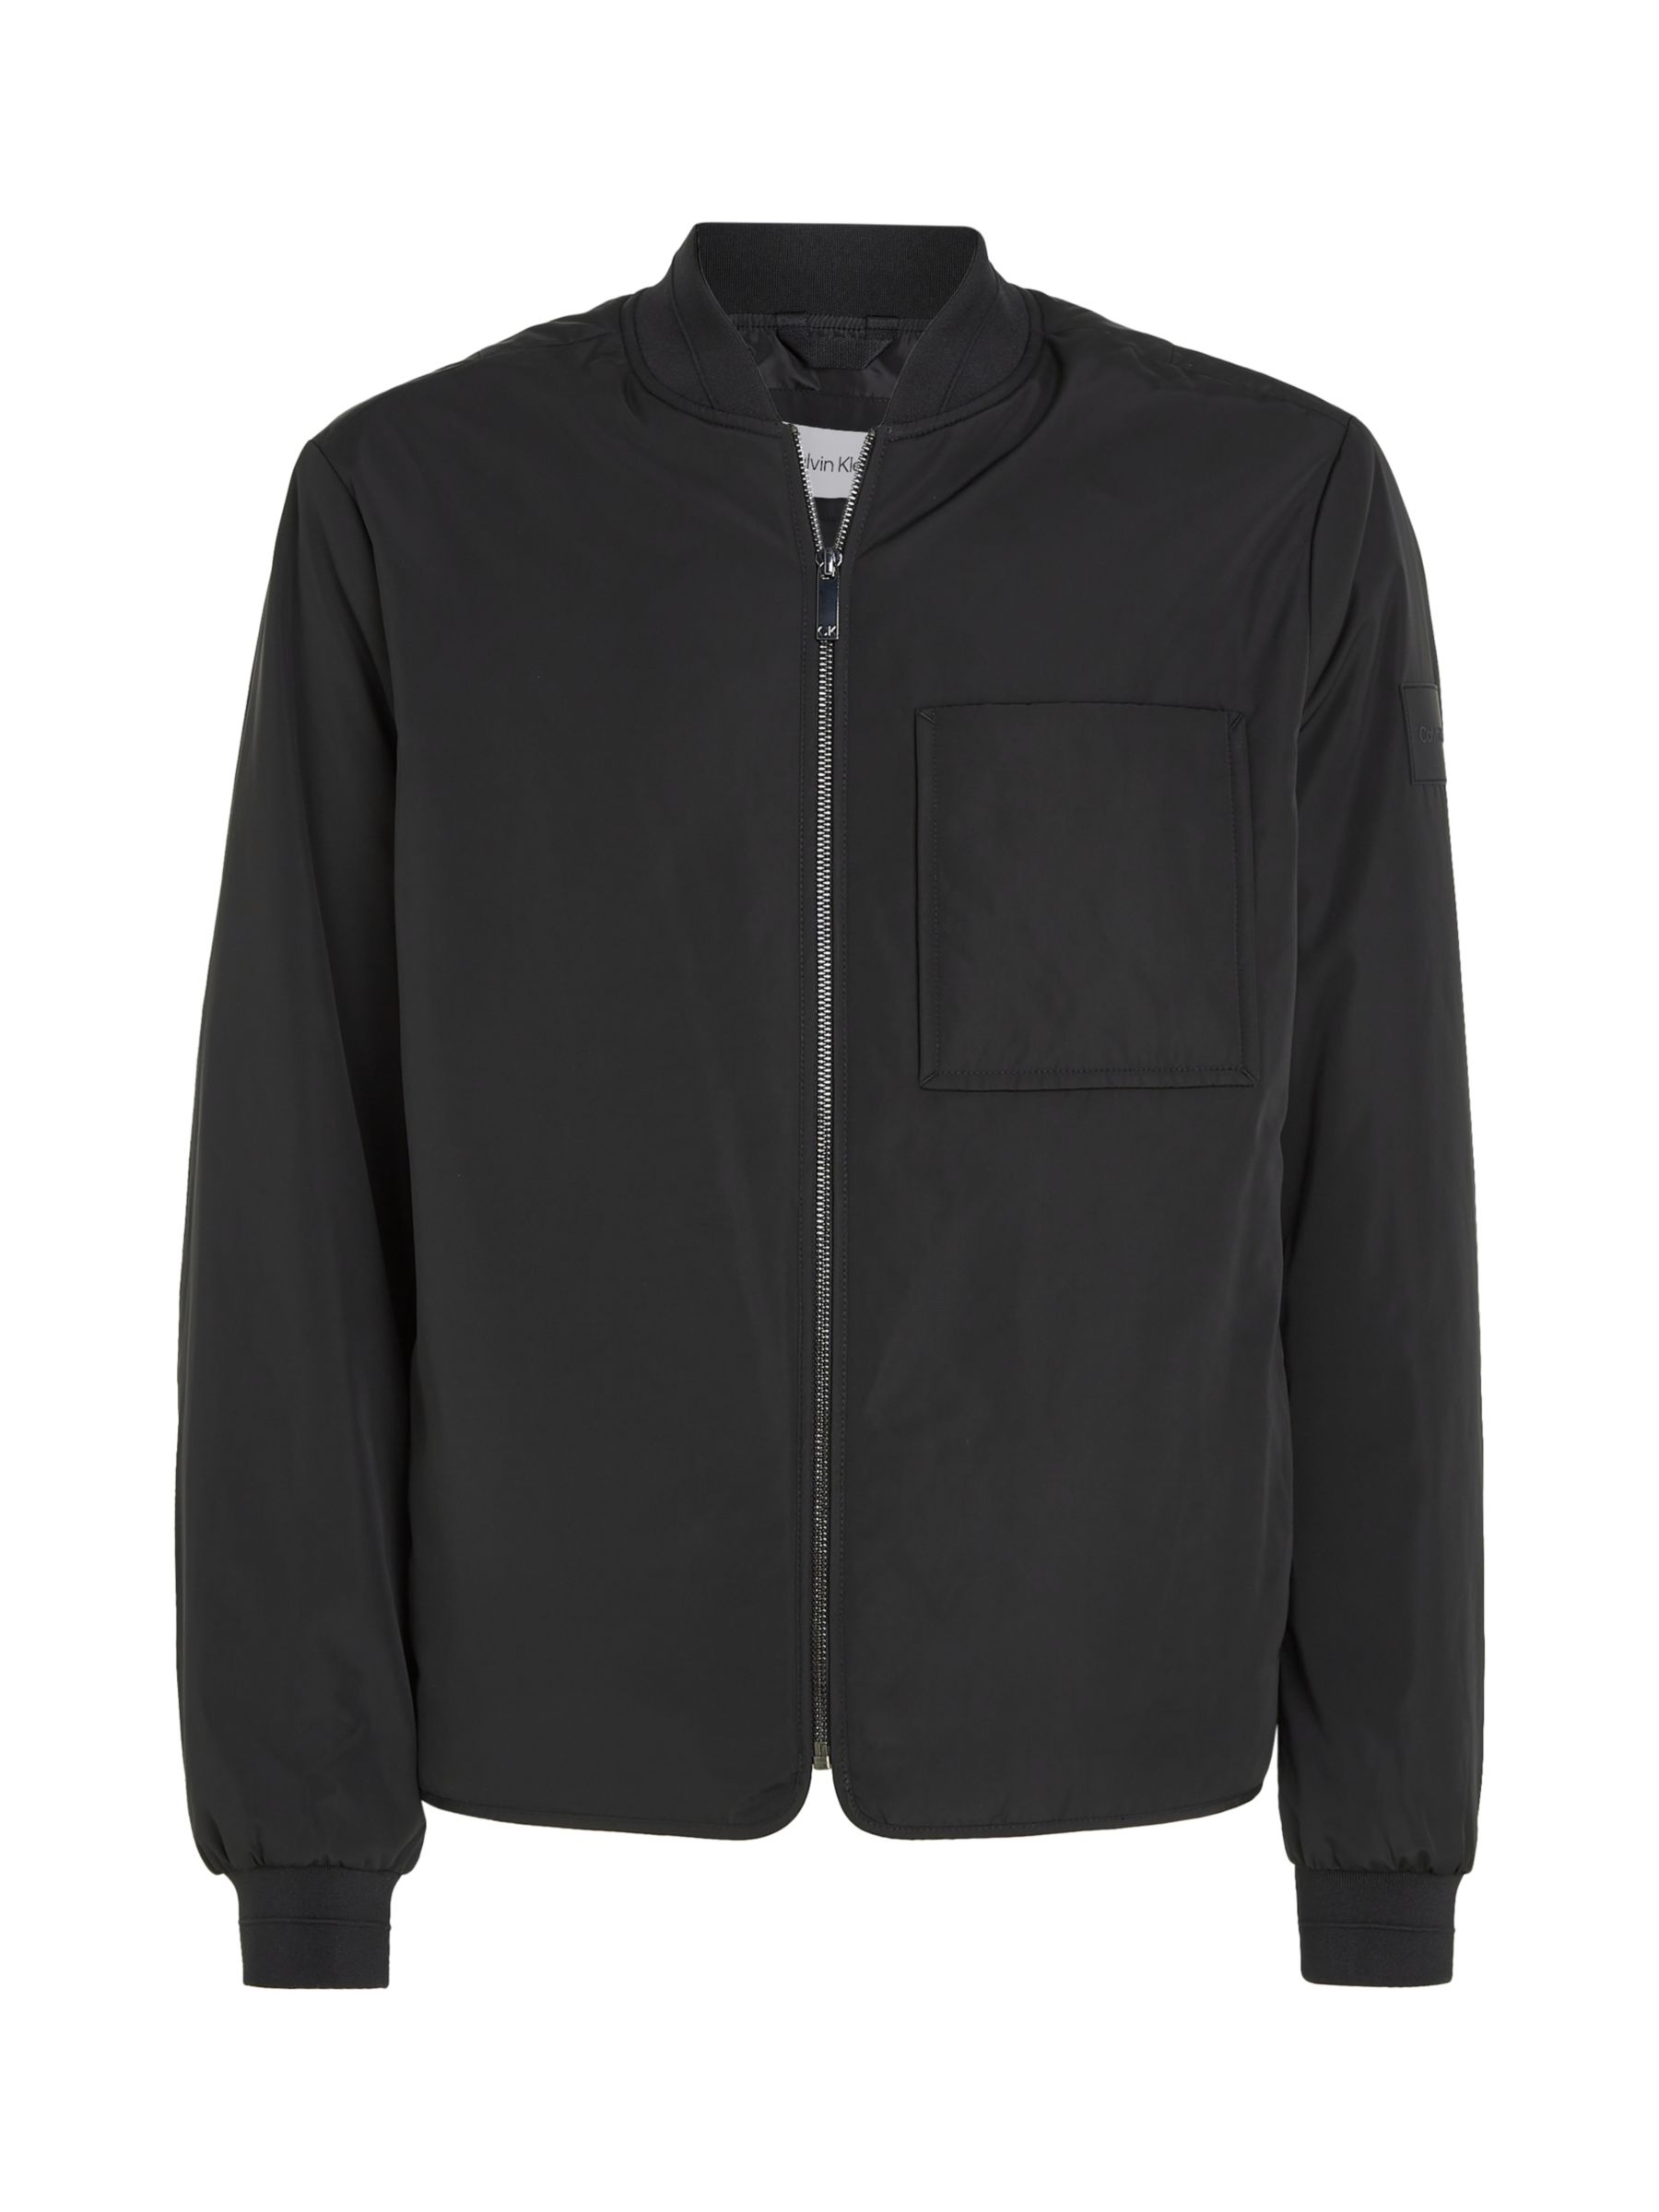 Calvin Klein Super Lightweight Bomber Jacket, Black, XL